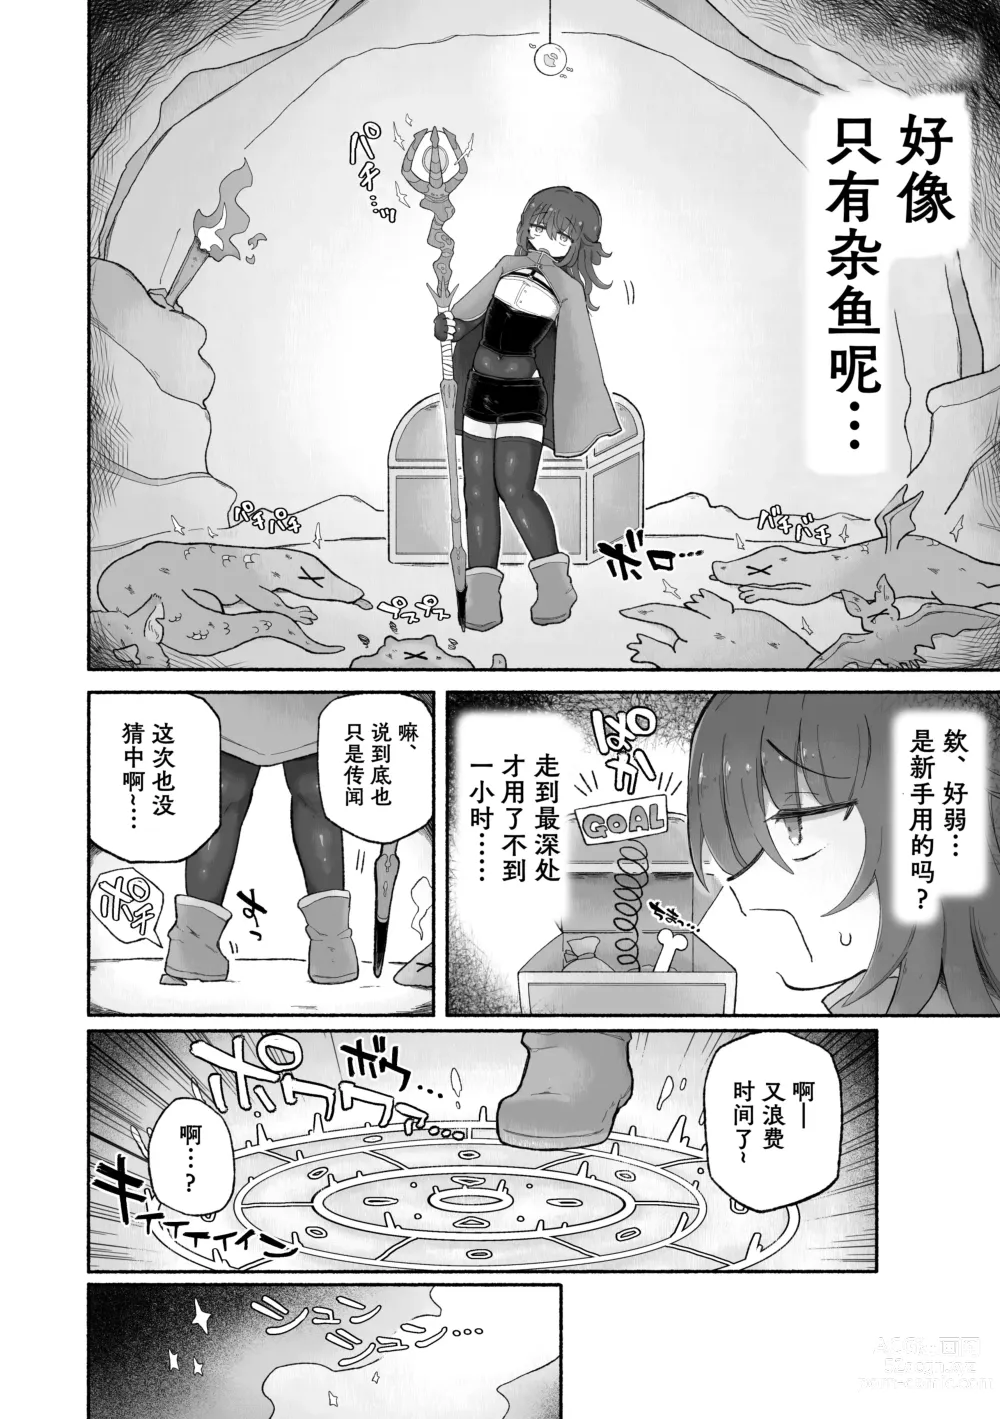 Page 5 of doujinshi Do hamari chui no kyosei danjon! 〜Mugen shasei no kairaku jigoku e yokoso〜